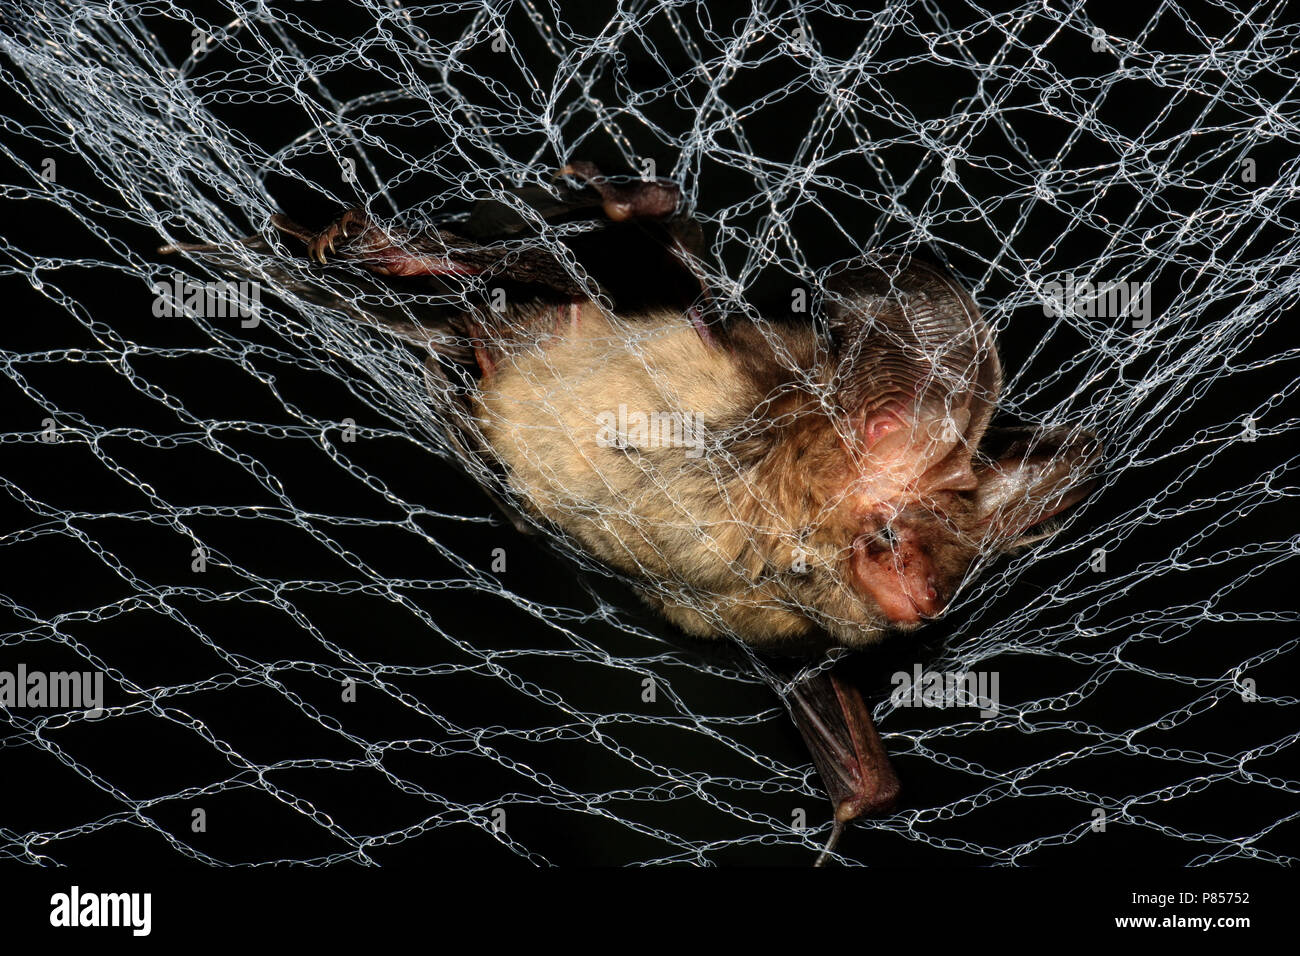 Grootoorvleermuis gevangen in een net; Brown Long-eared Bat caught in a net Stock Photo